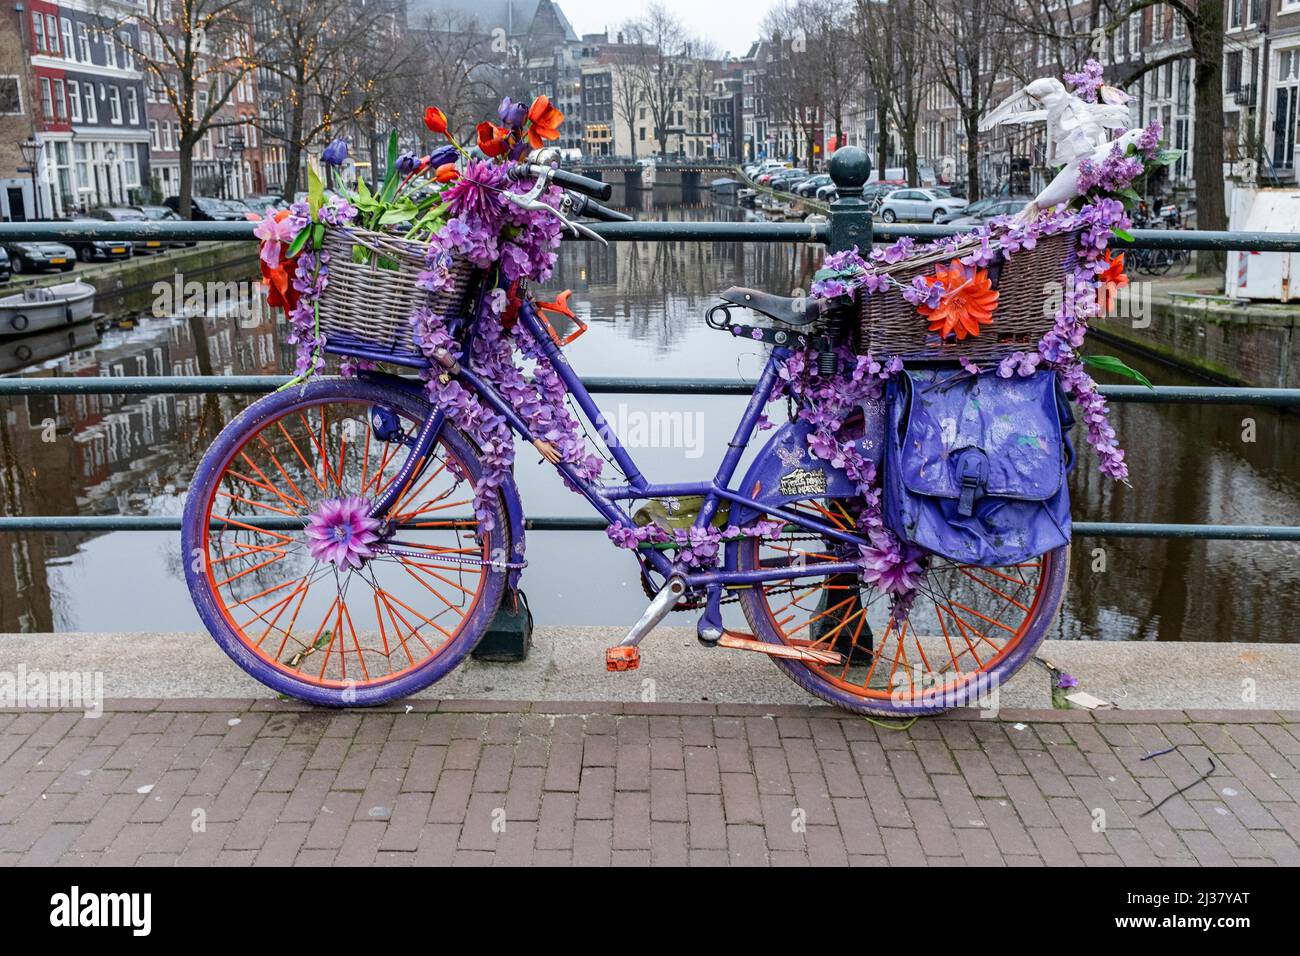 Amsterdam, Niederlande. Fahrräder mit bunten Blumen geschmückt, die auf  mehreren Grachtenbrücken in der Stadt als urbanes Kunstprojekt geparkt sind  Stockfotografie - Alamy